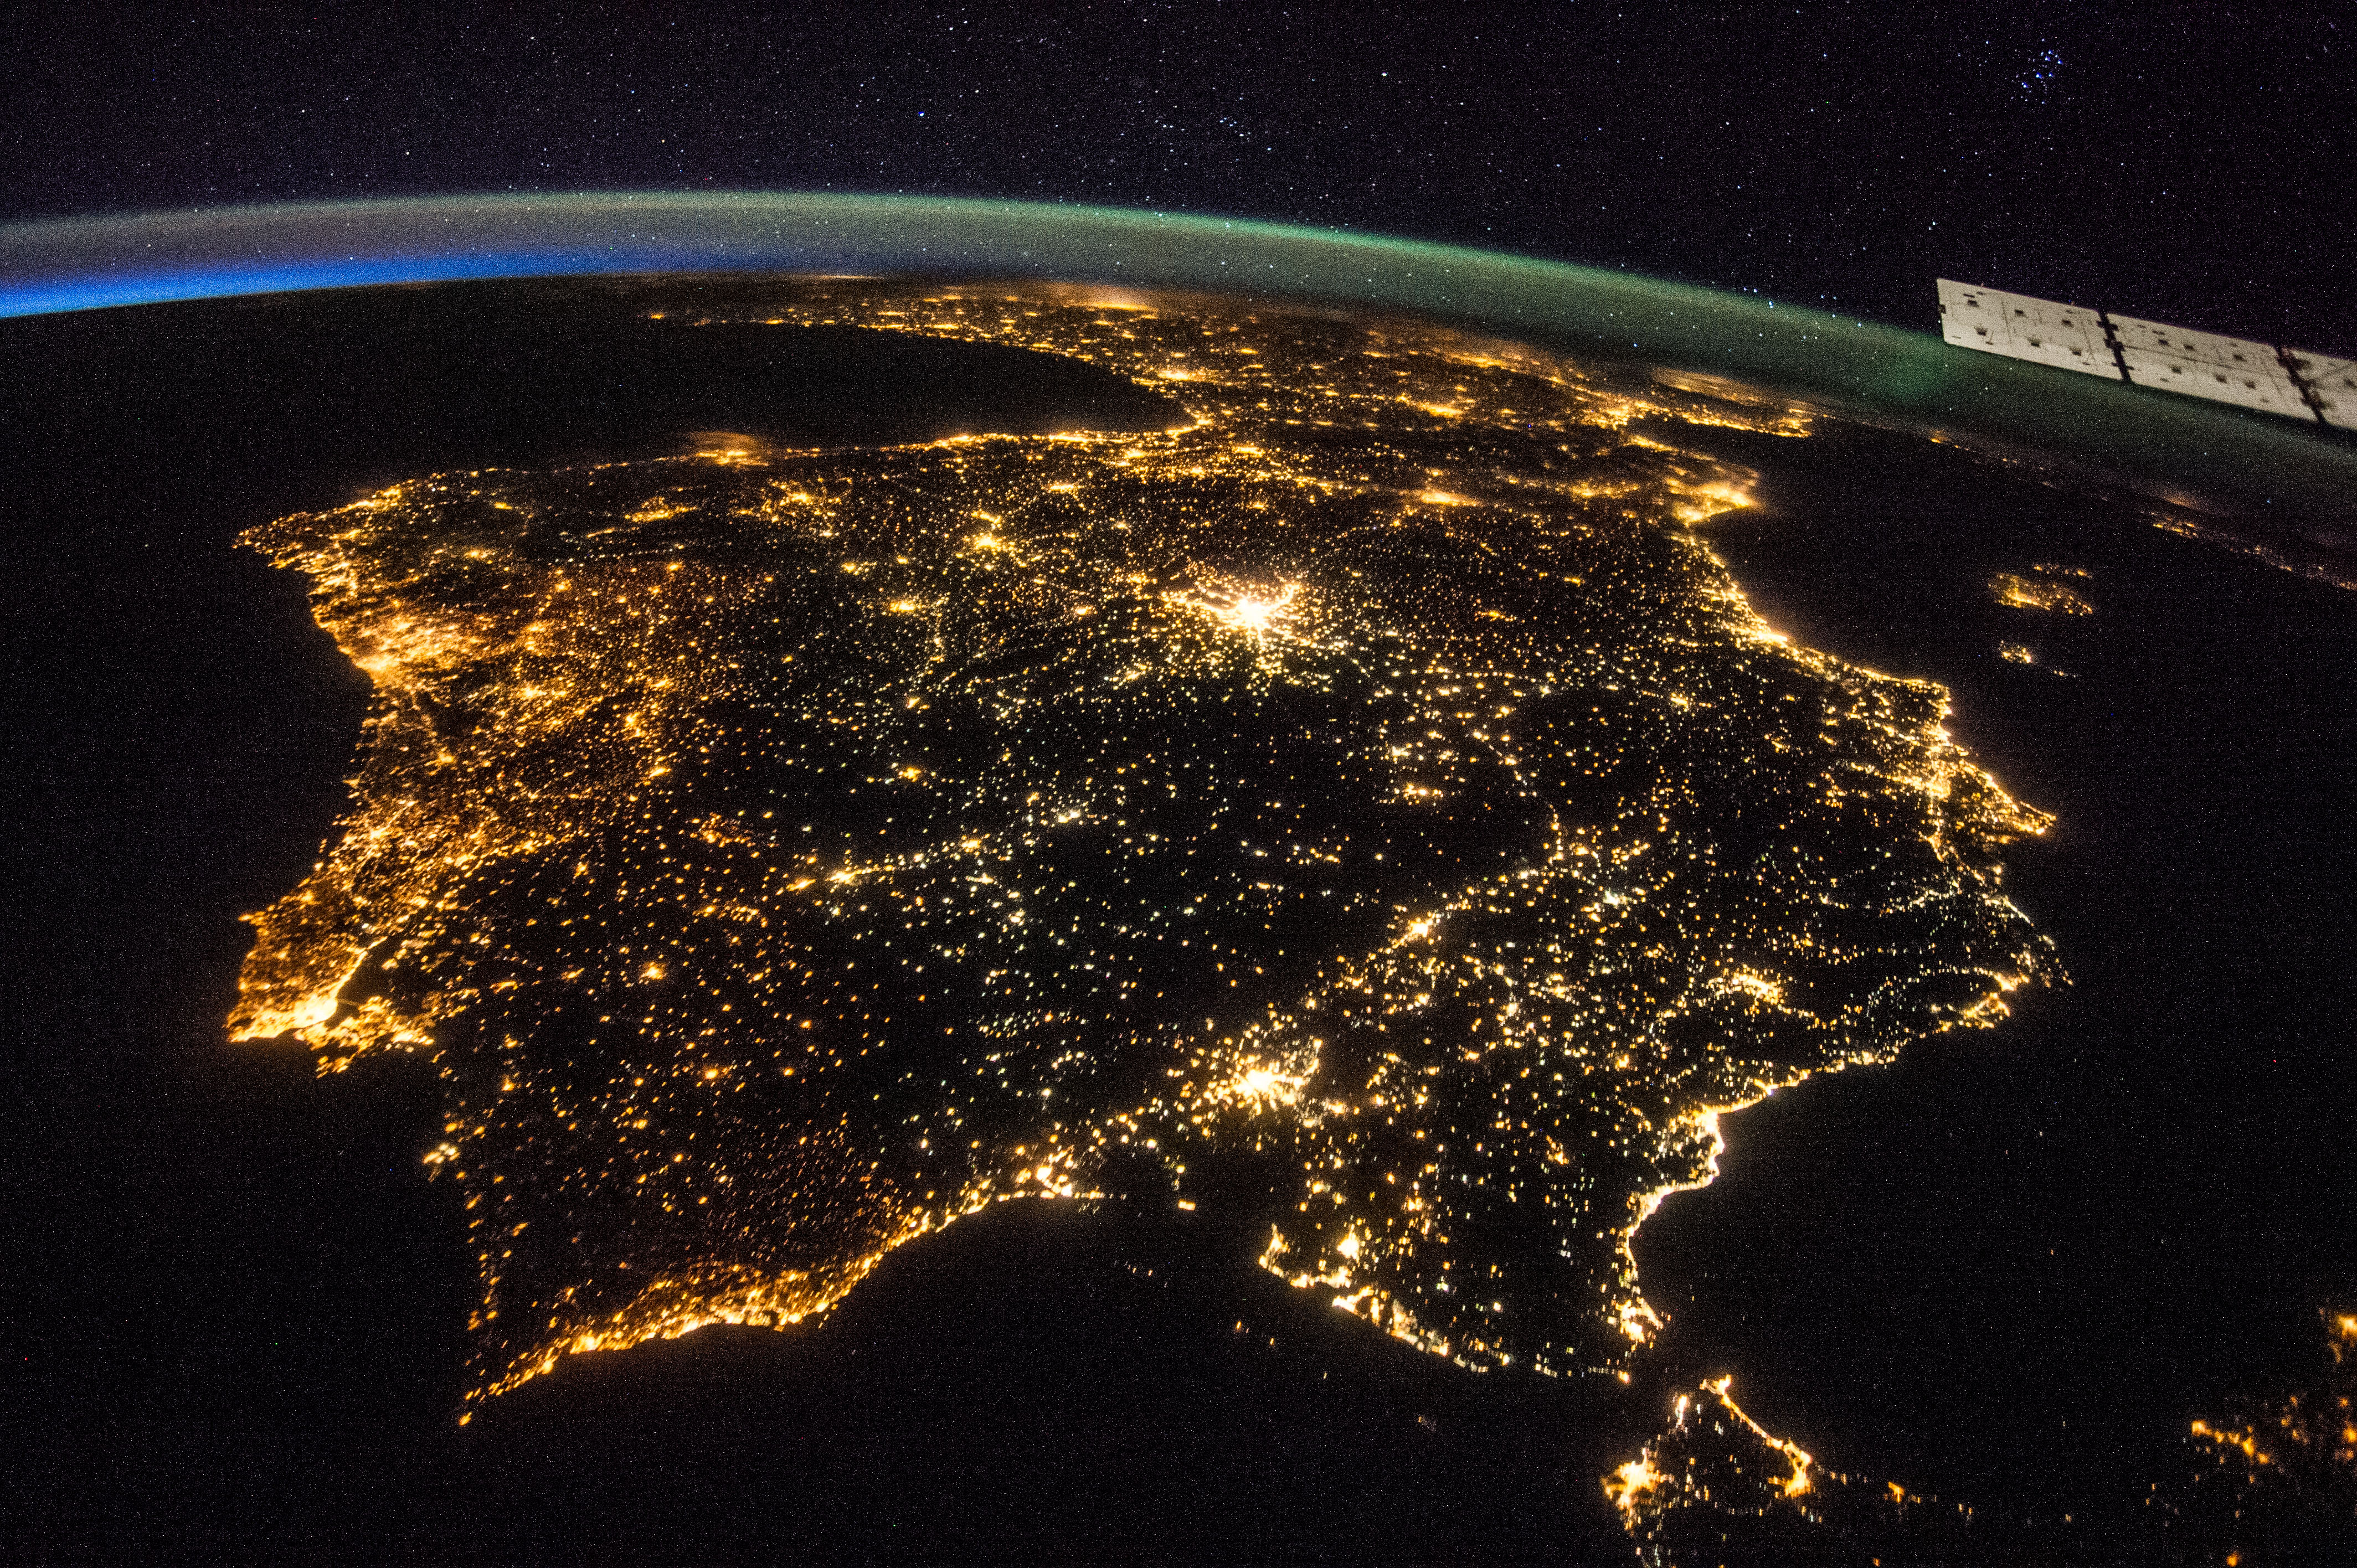 Ночи евразии. Пиренейский полуостров из космоса. Северная Корея ночью из космоса. Северная Корея вид из космоса ночью. Снимки НАСА из космоса.